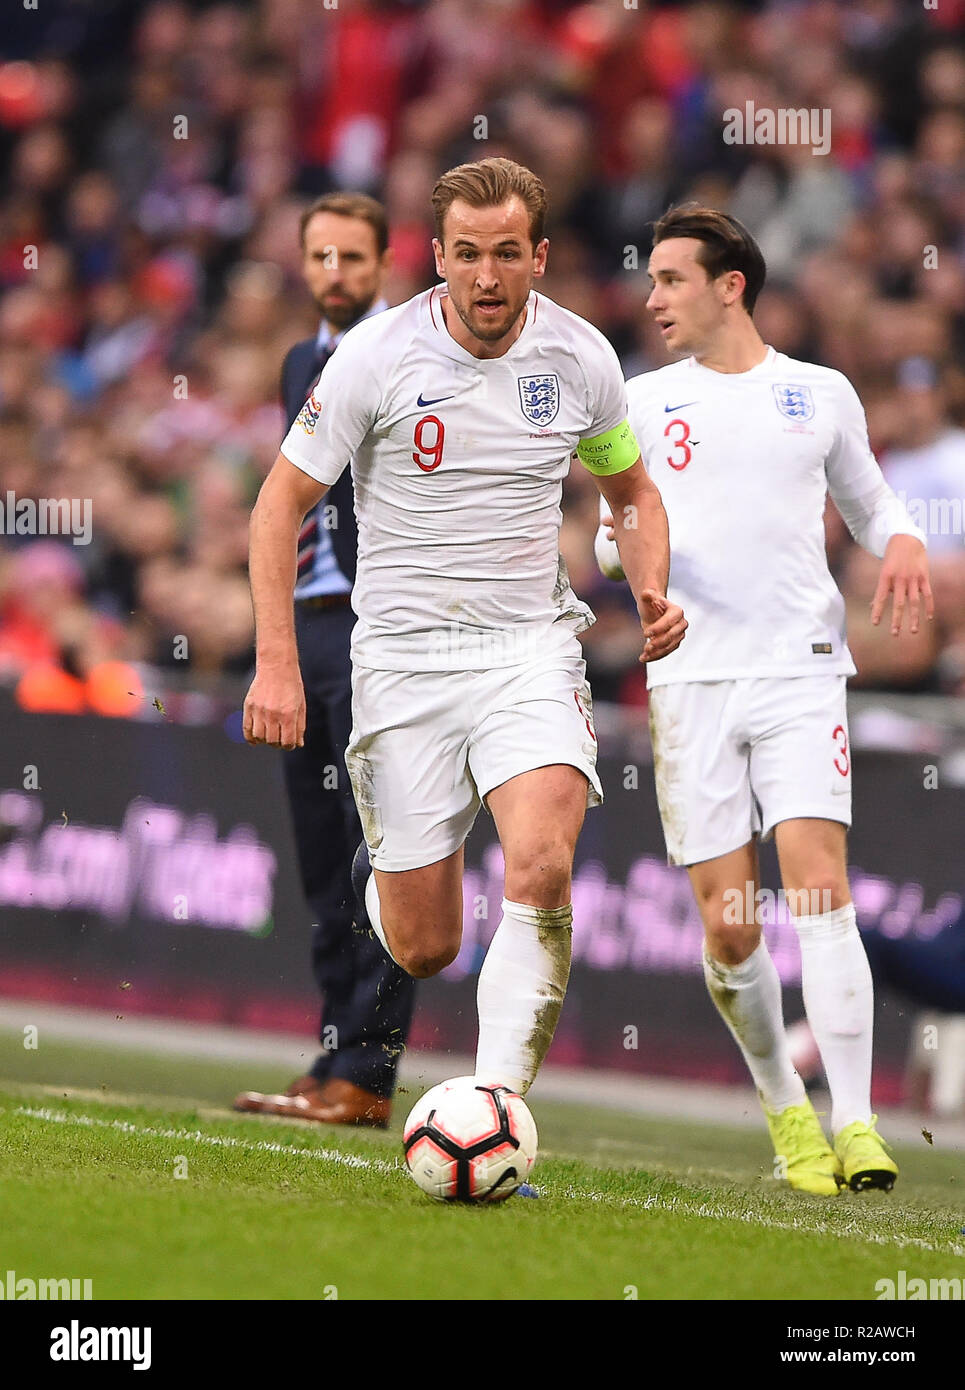 Londra, Regno Unito. Il 18 novembre 2018. Inghilterra avanti Harry Kane (9) durante la UEFA Nazioni League match tra Inghilterra e Croazia allo Stadio di Wembley, Londra domenica 18 novembre 2018. (©MI News & Sport Ltd | Alamy Live News) Foto Stock